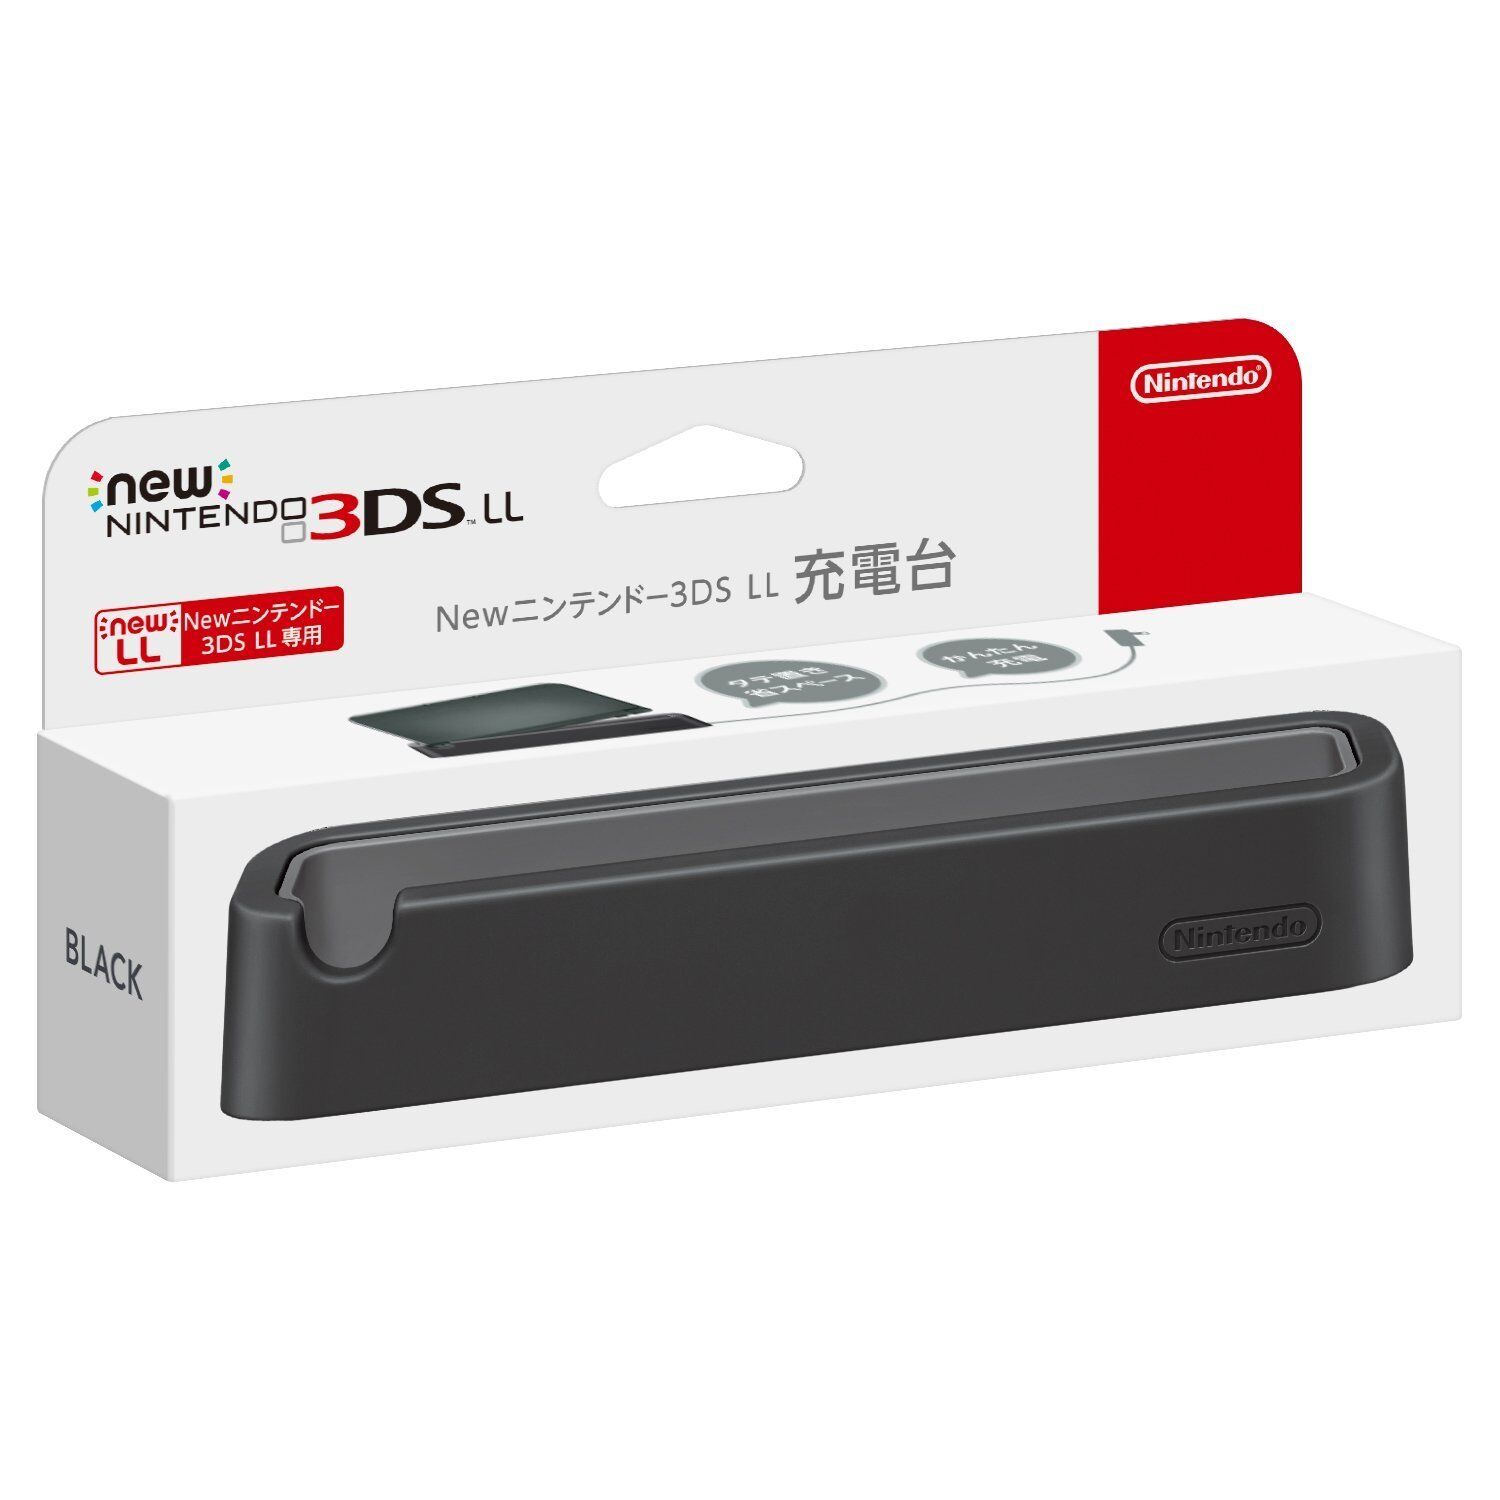 New Nintendo 3DS XL Ll Podstawka ładująca Czarny wspornik Red-A-Cdka Japonia-pokaż oryginalną nazwę Tania specjalna cena